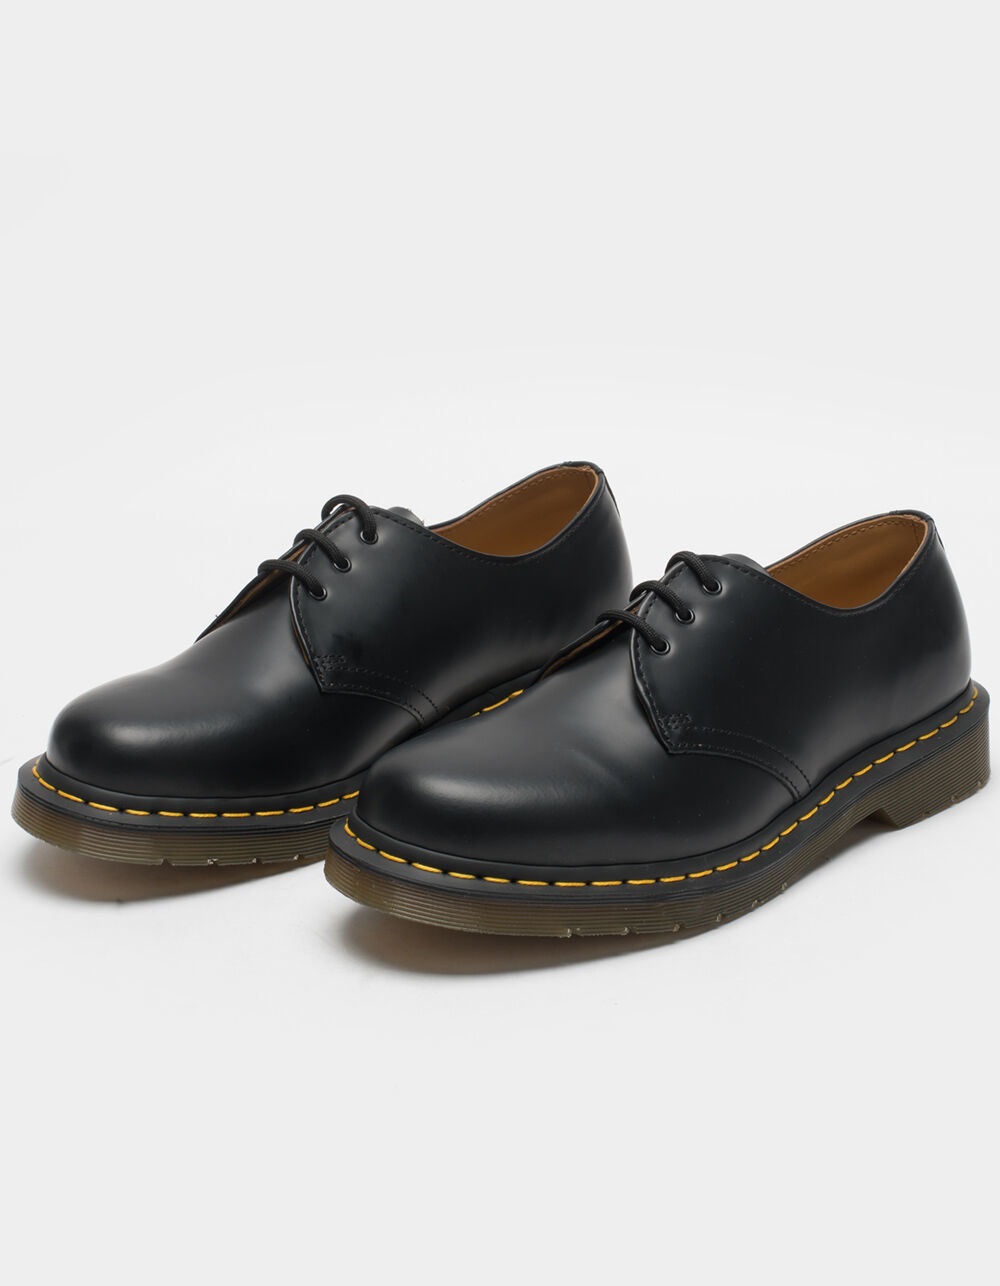 Wereldvenster Vernauwd soort DR. MARTENS 1461 Smooth Leather Mens Oxford Shoes - BLACK | Tillys